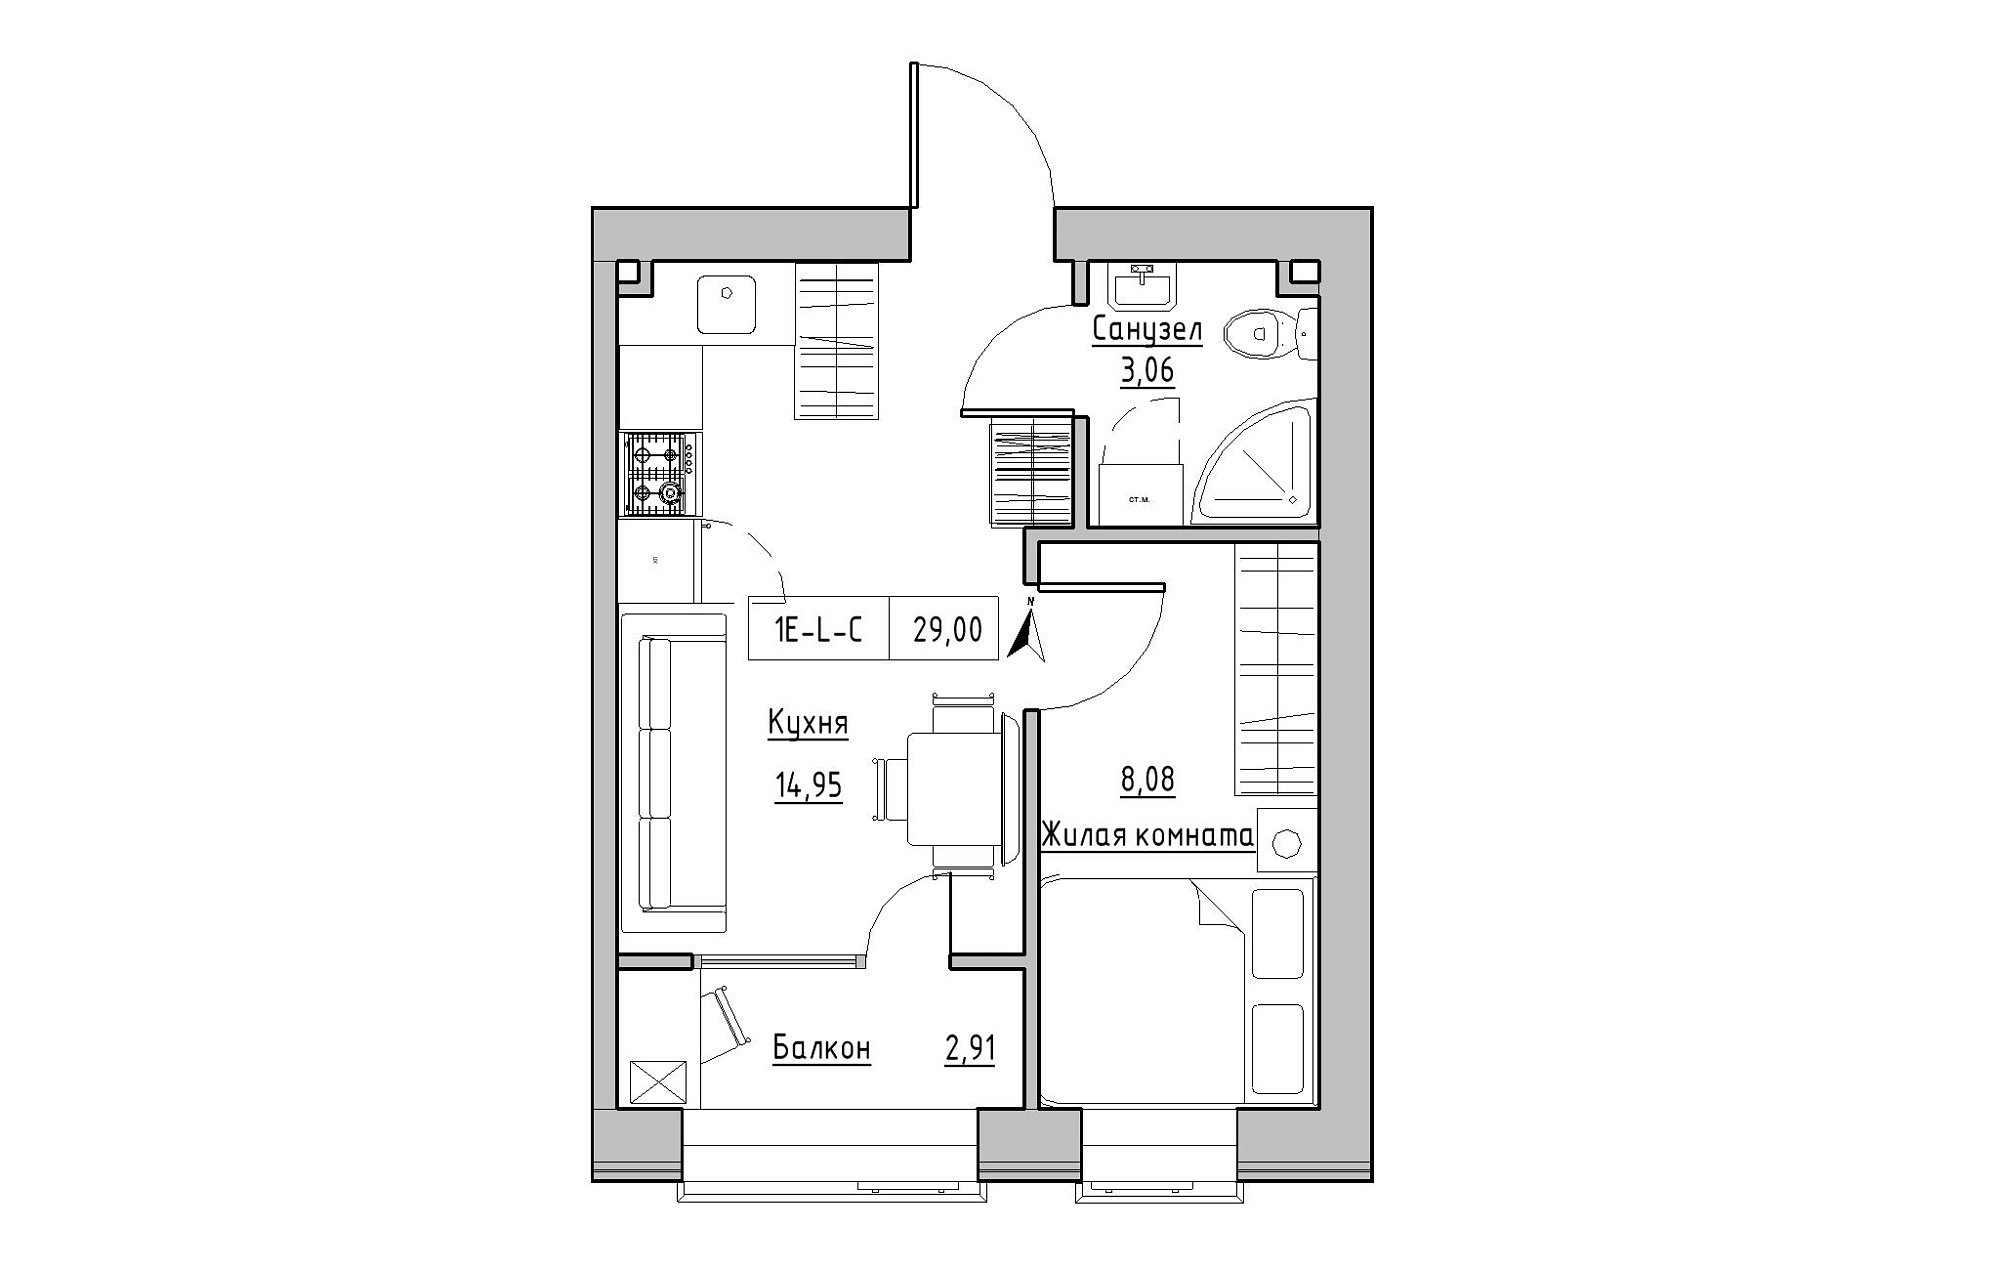 Планировка 1-к квартира площей 29м2, KS-019-04/0009.